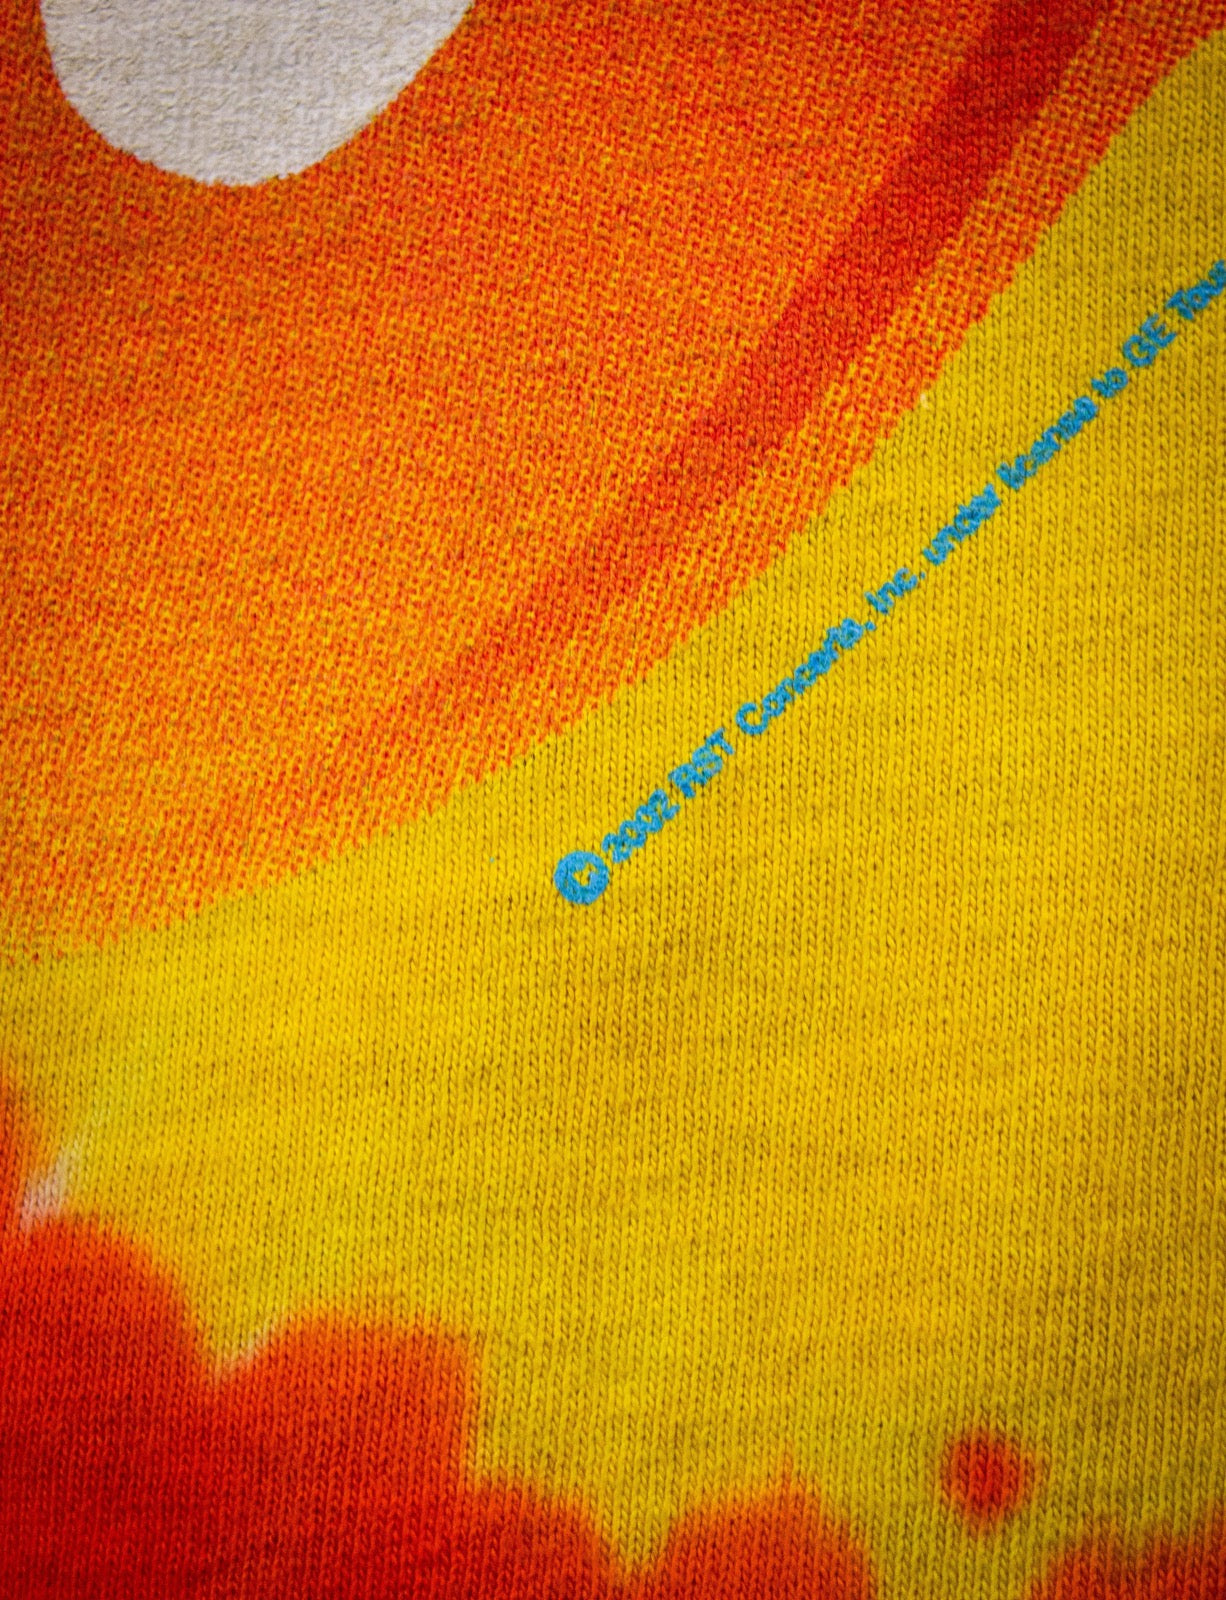 Vintage Rolling Stones Tie Dye Concert T Shirt 2002/03 XL